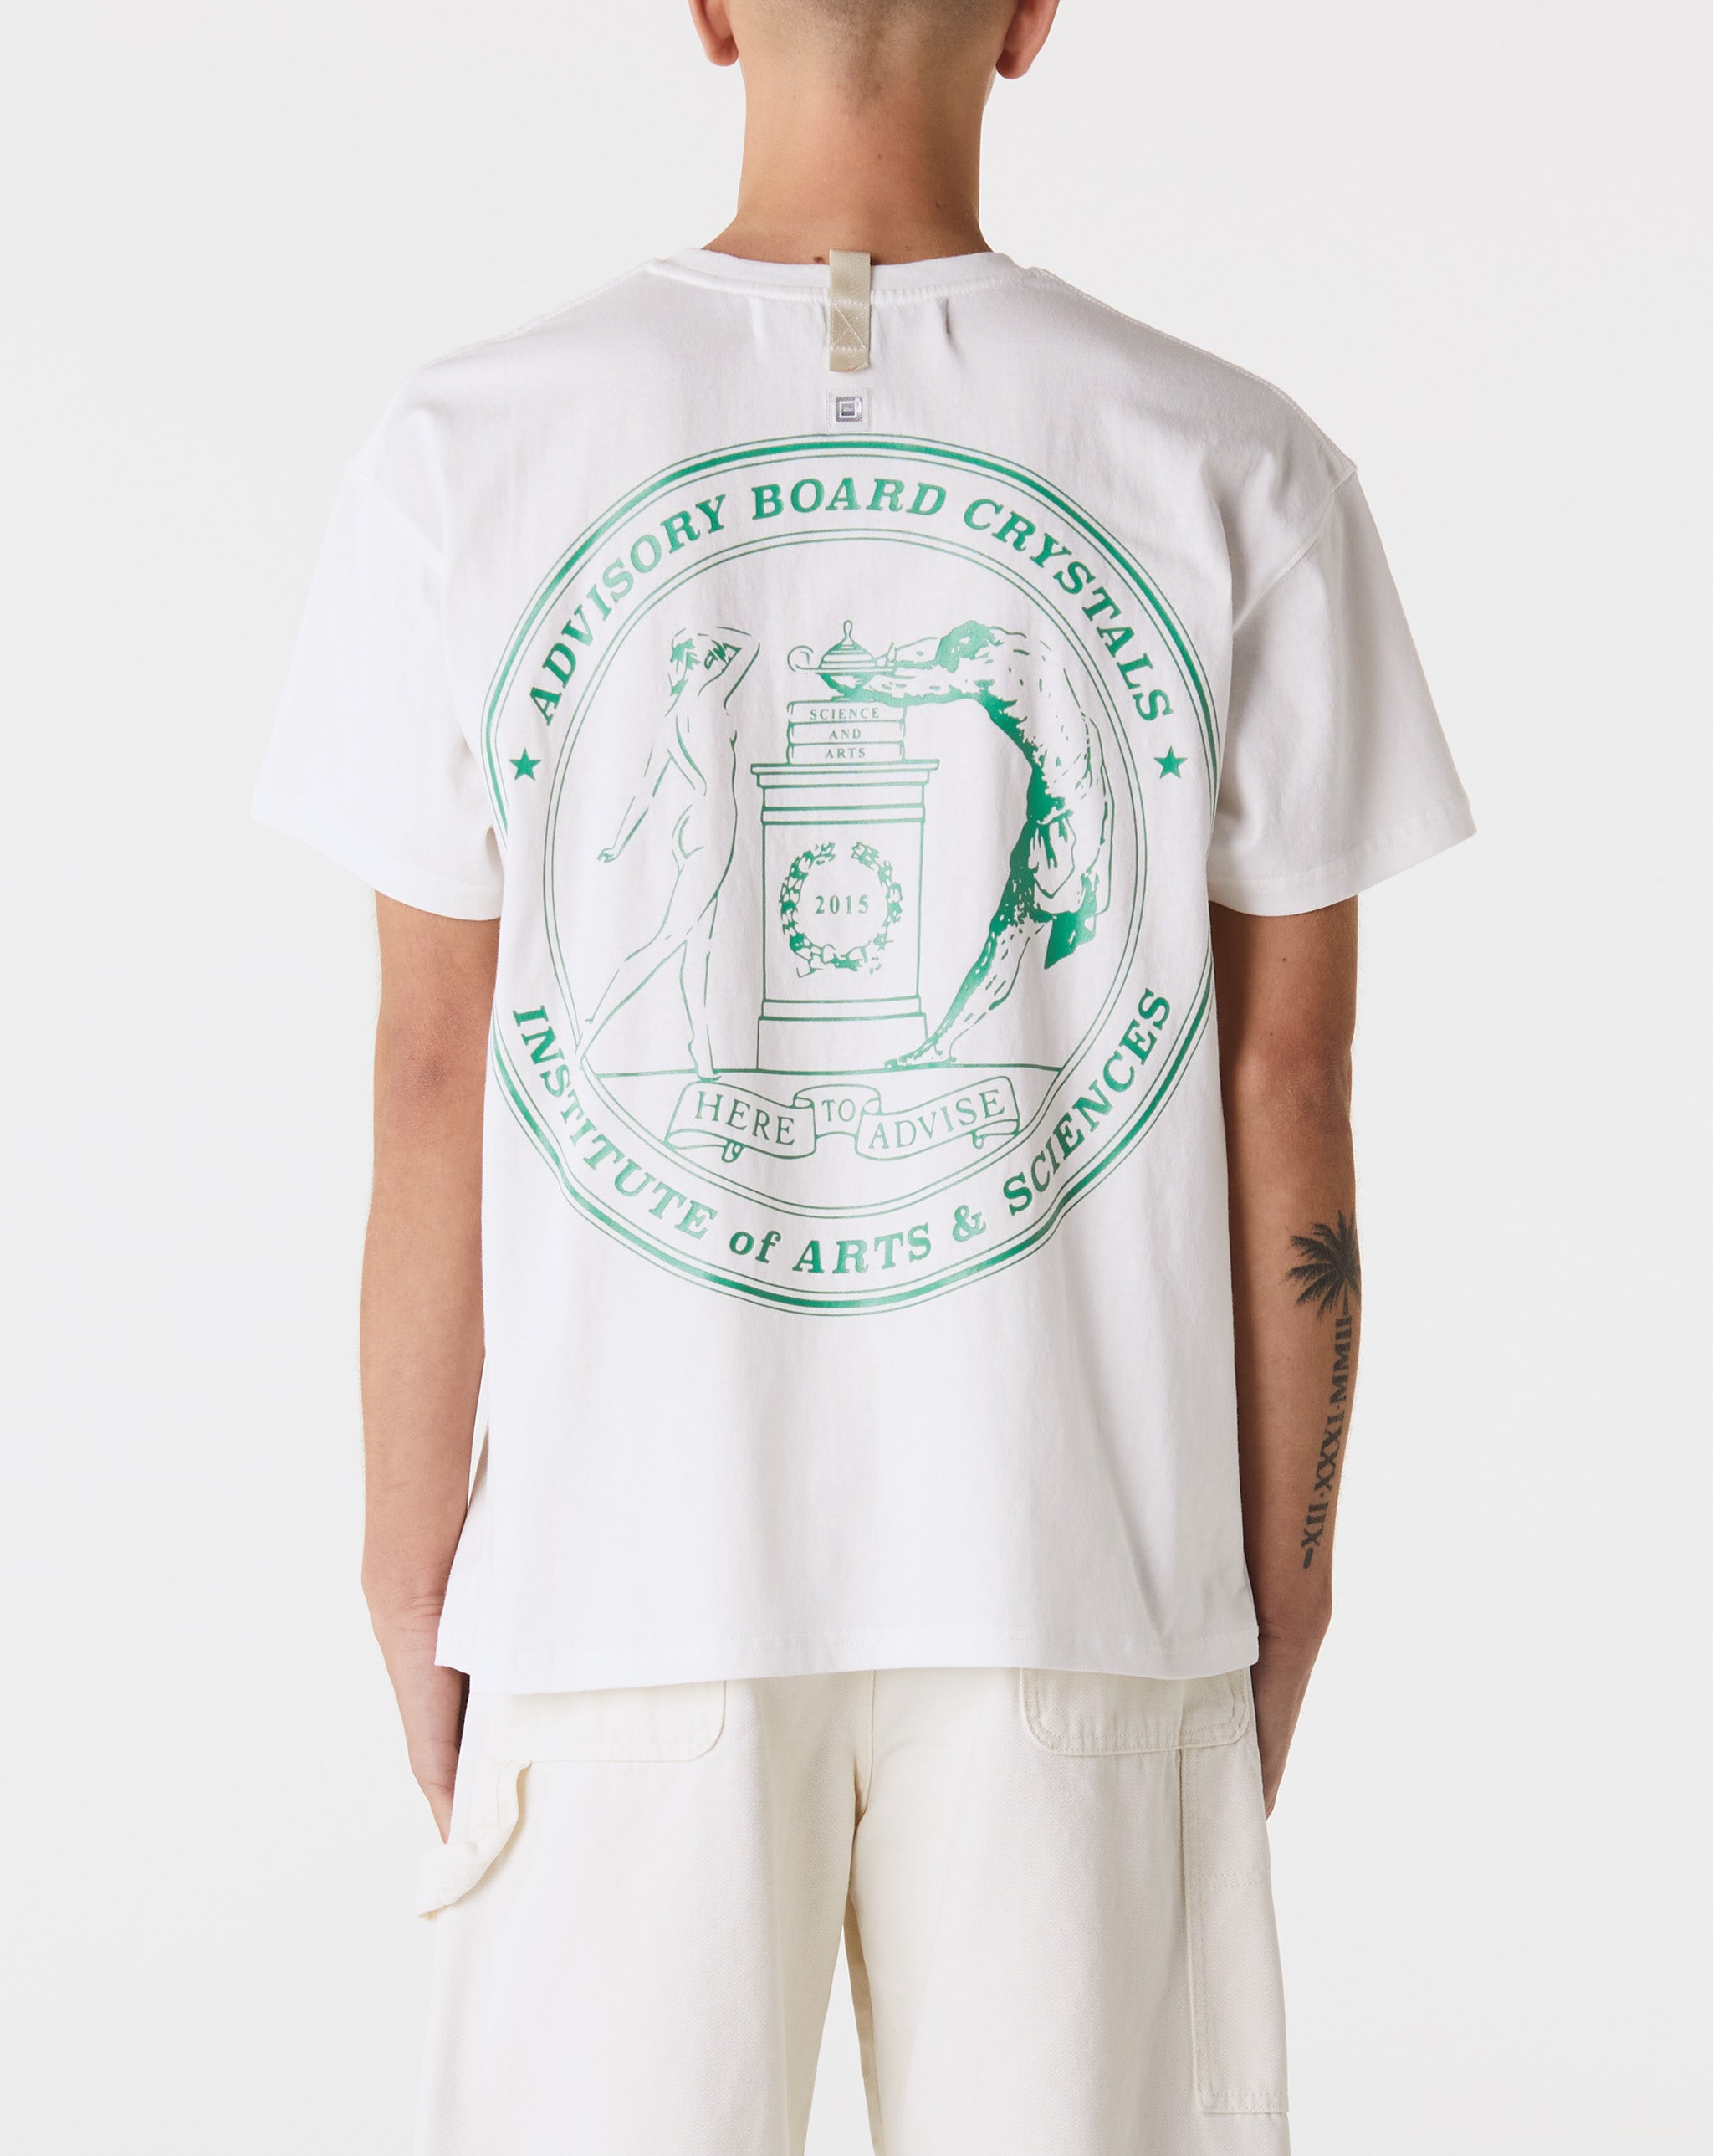 Herd Mentality T-Shirt University T-Shirt  - Cheap Urlfreeze Jordan outlet